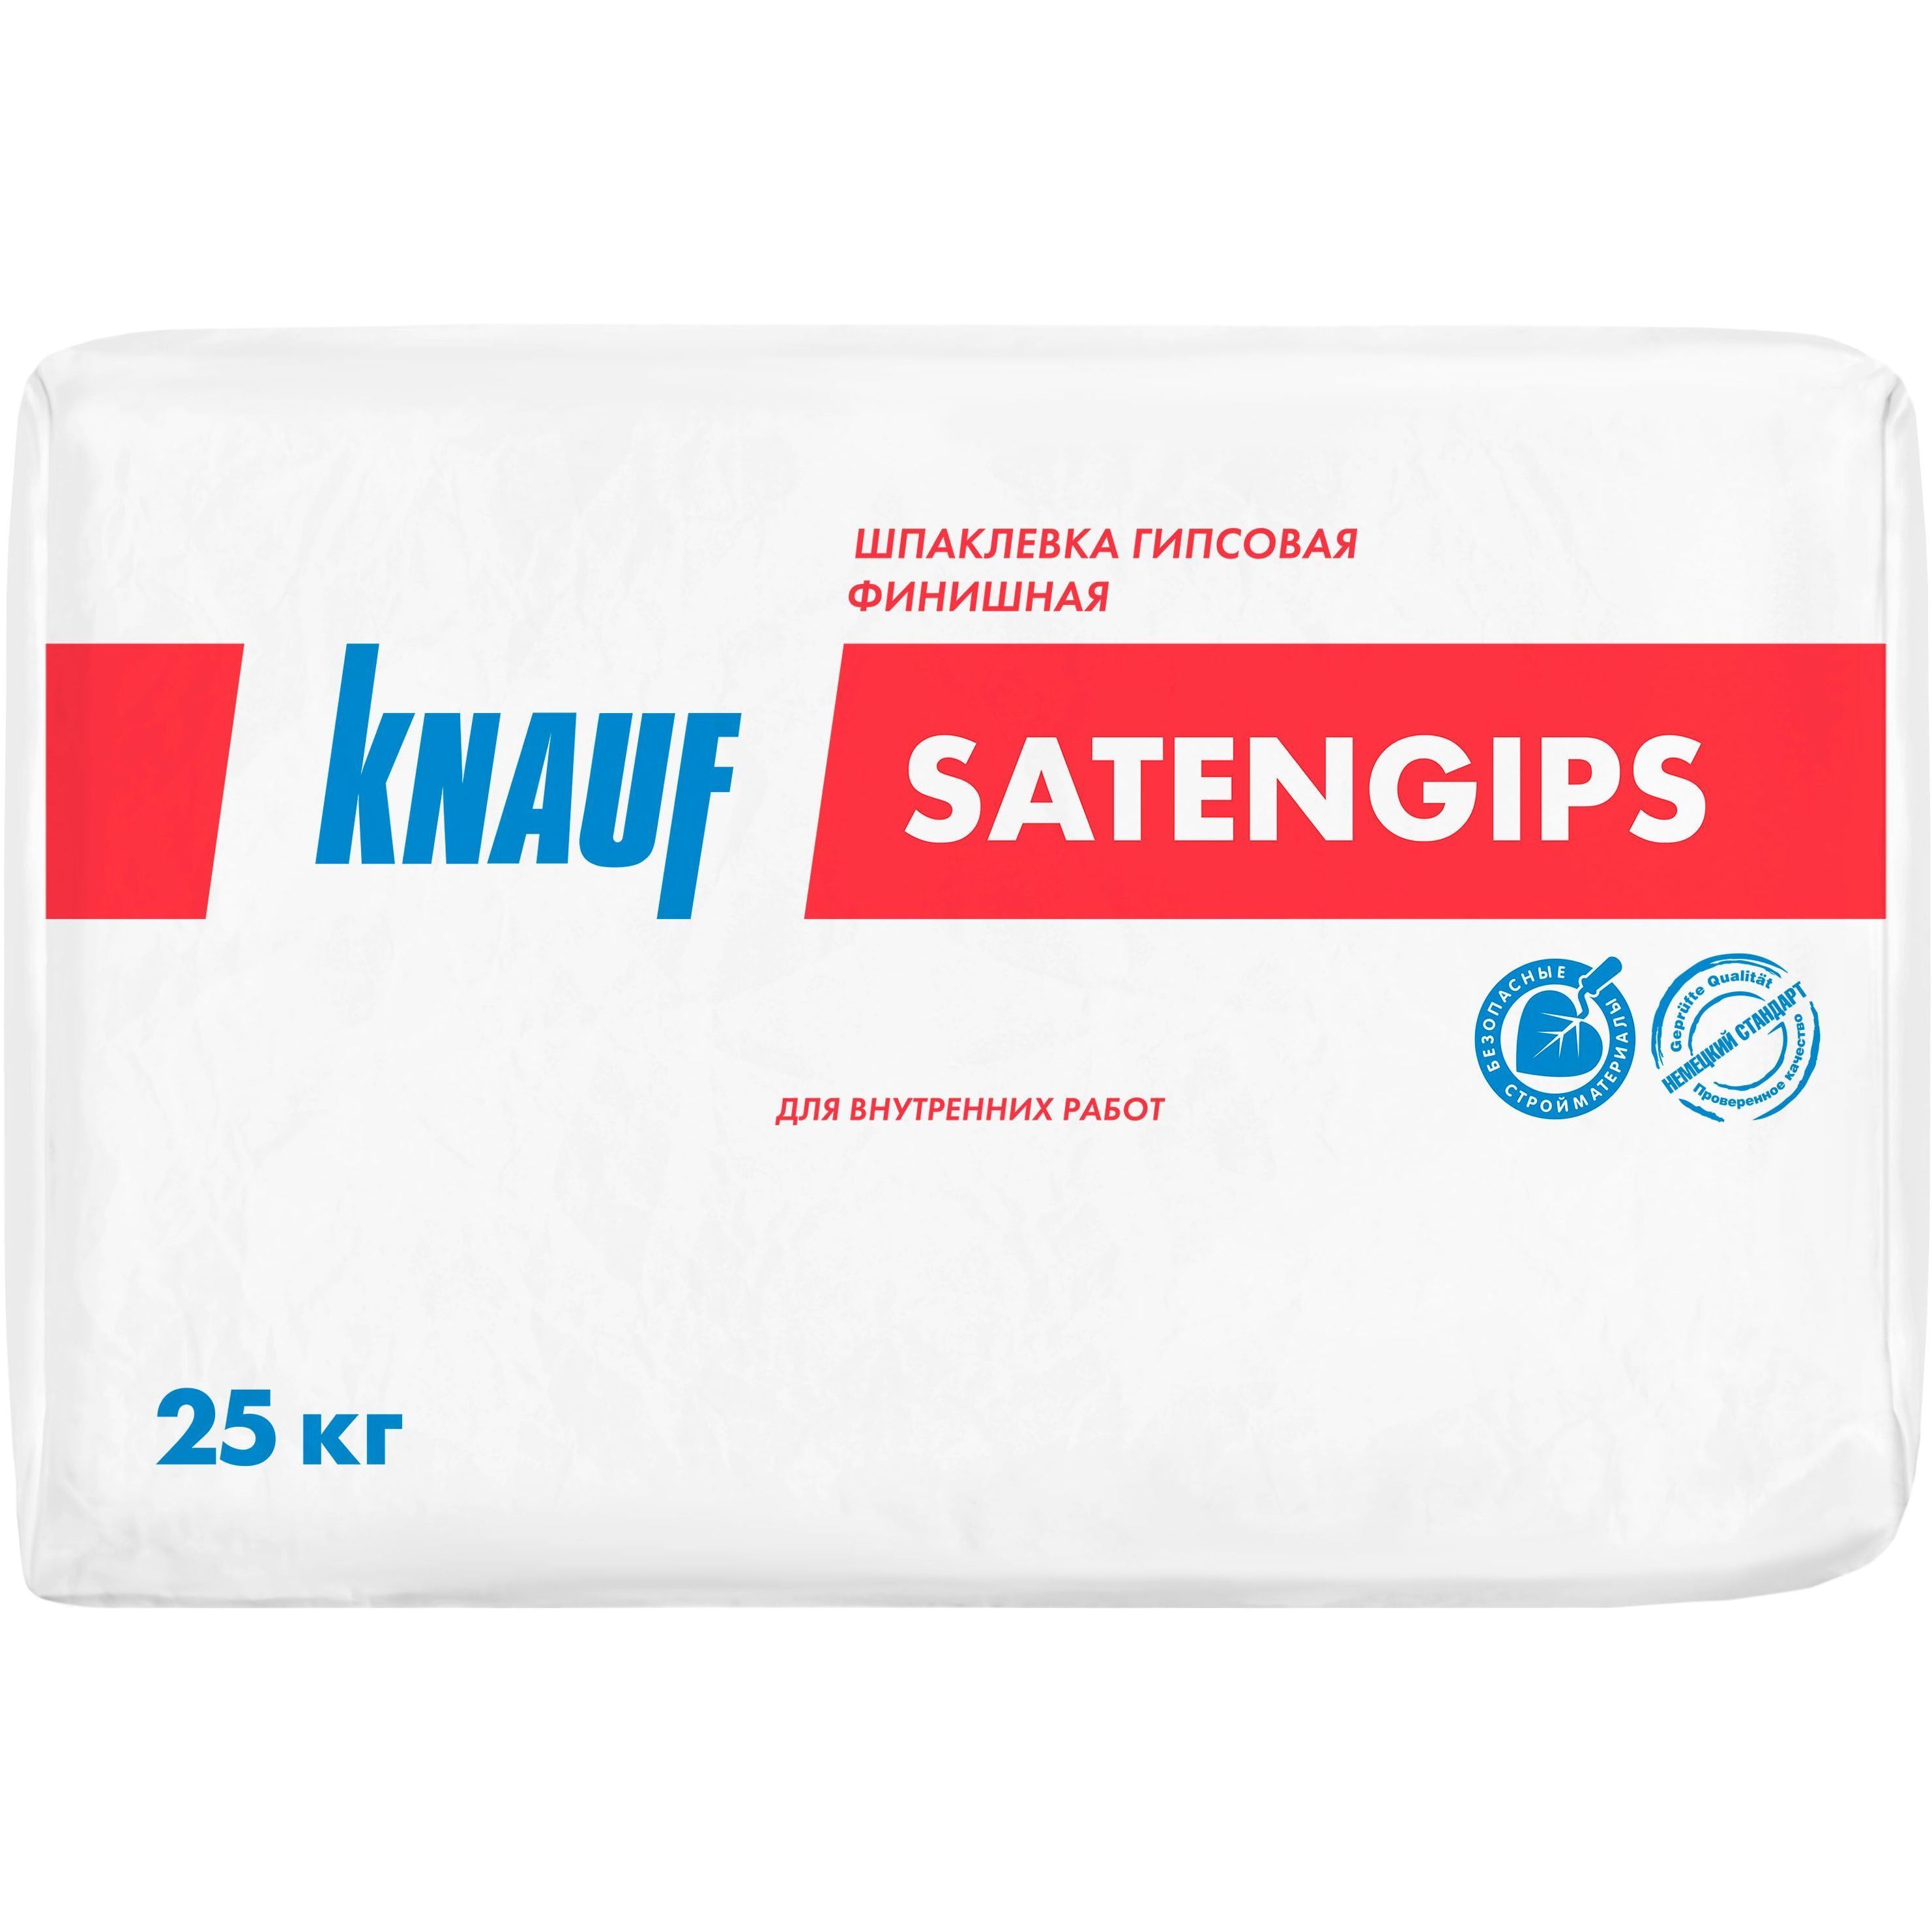 Шпаклевка гипсовая КНАУФ-Сатенгипс 25 кг